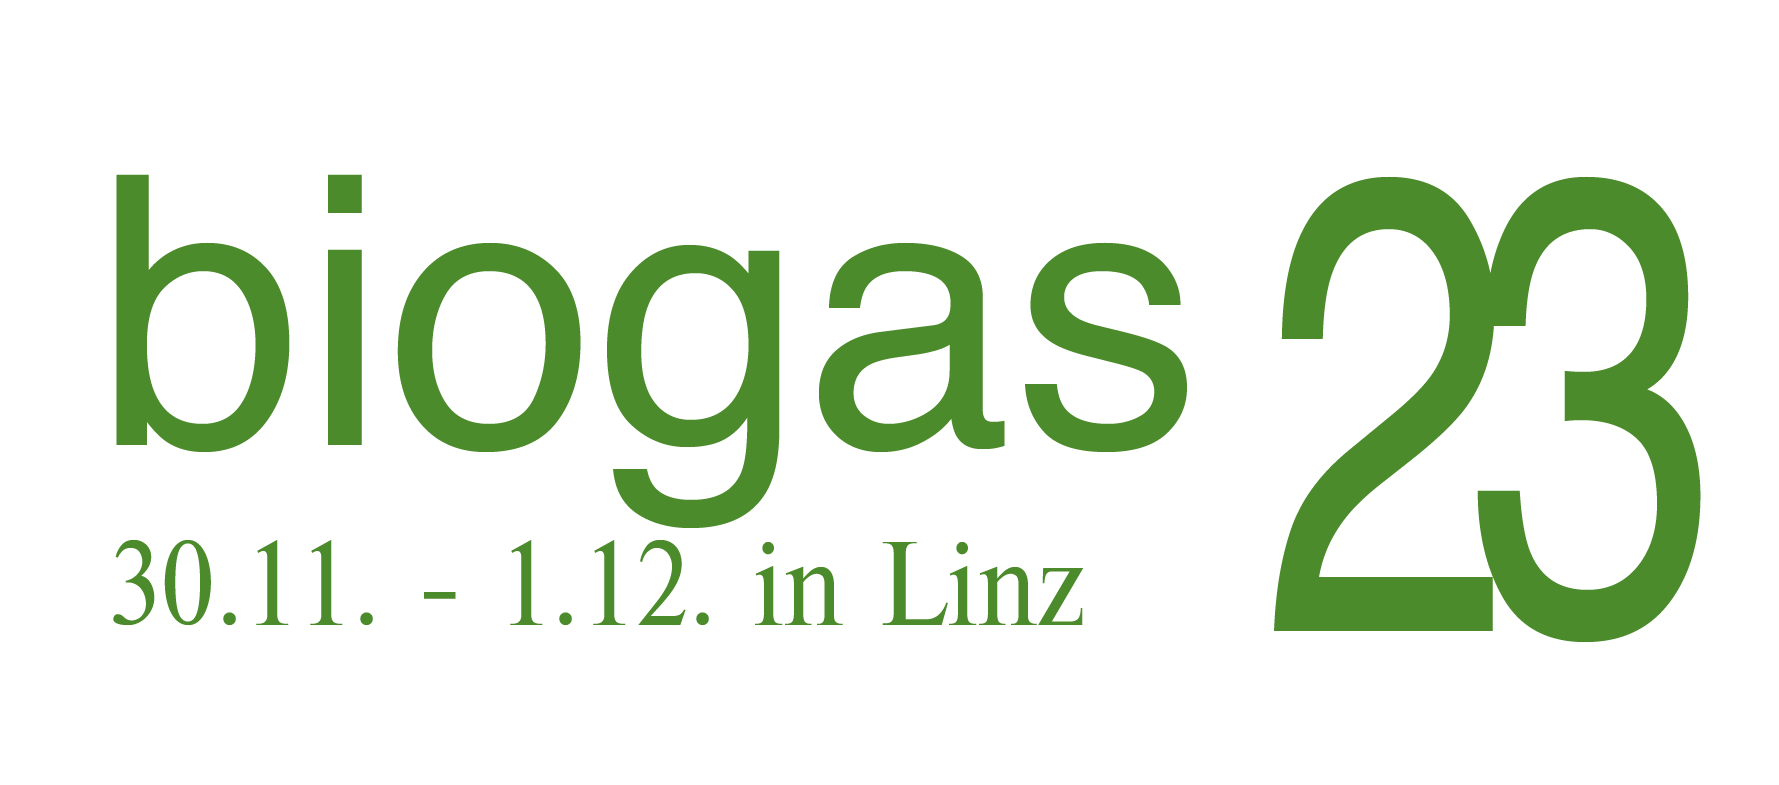 biogas23 a Linz